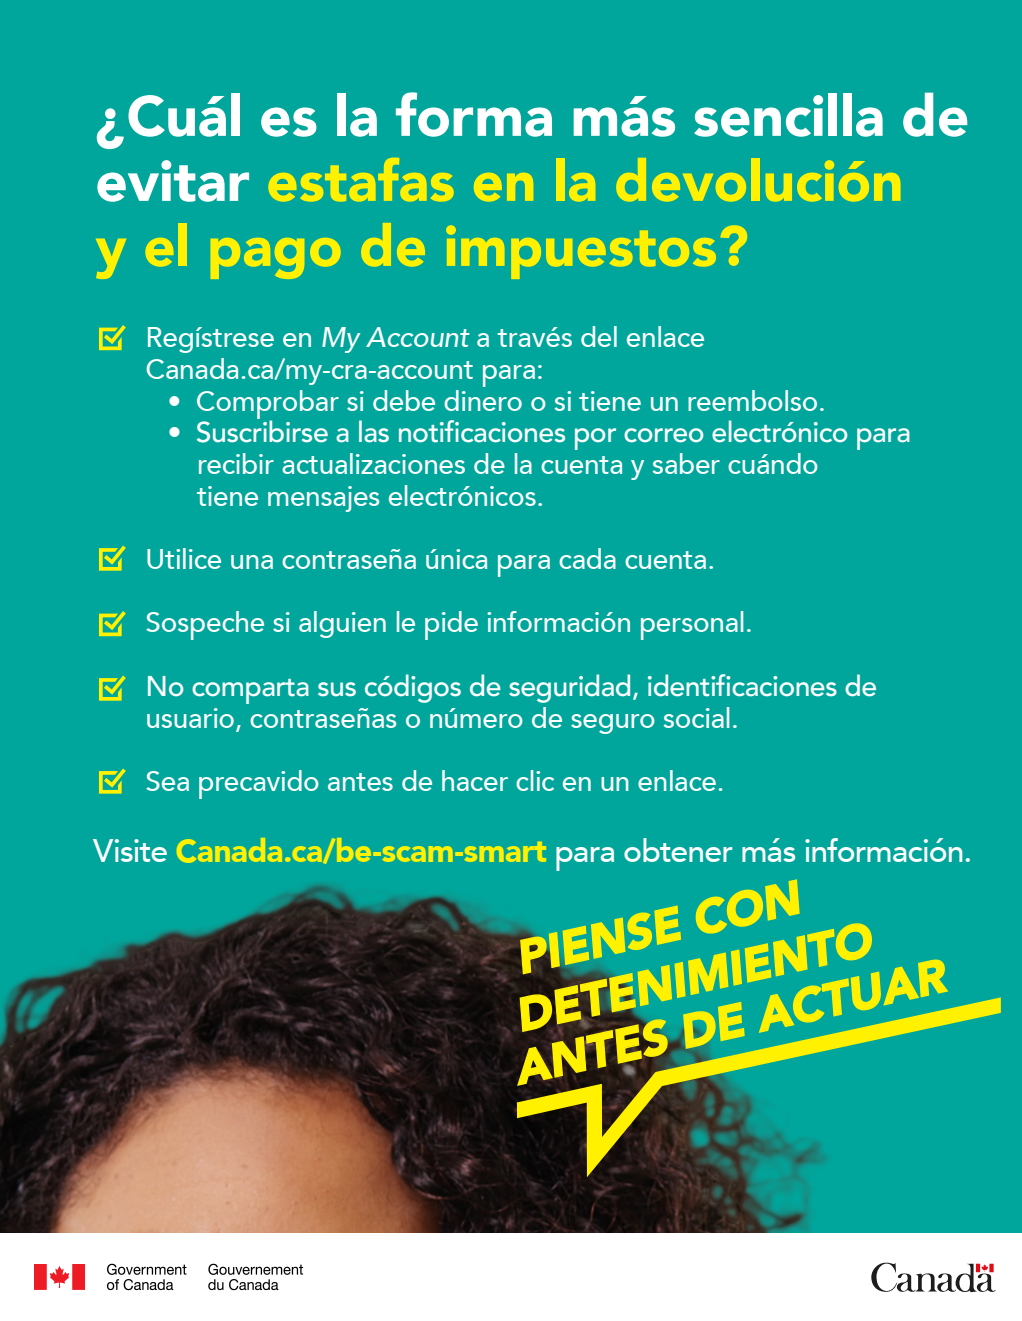 Cette affiche en espanol, en format PDF et aux fins d’illustration seulement, fournit quelques conseils qui proviennent de la page Web.